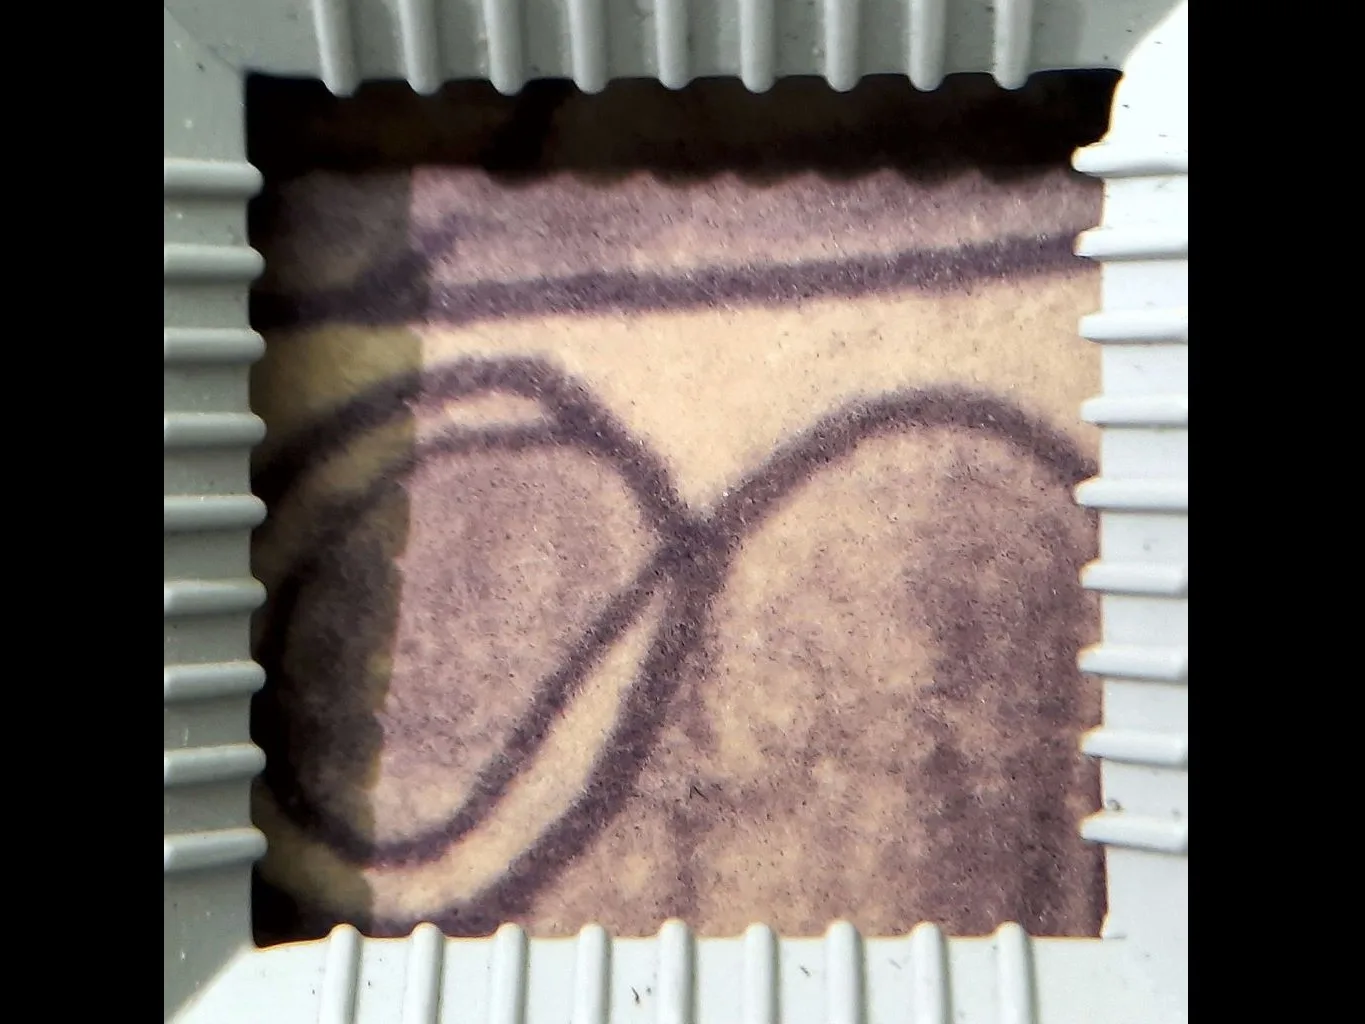 Detalhe de um papel creme com traços pretos e preenchimento arroxeado, dentro de esquadro branco quadrado